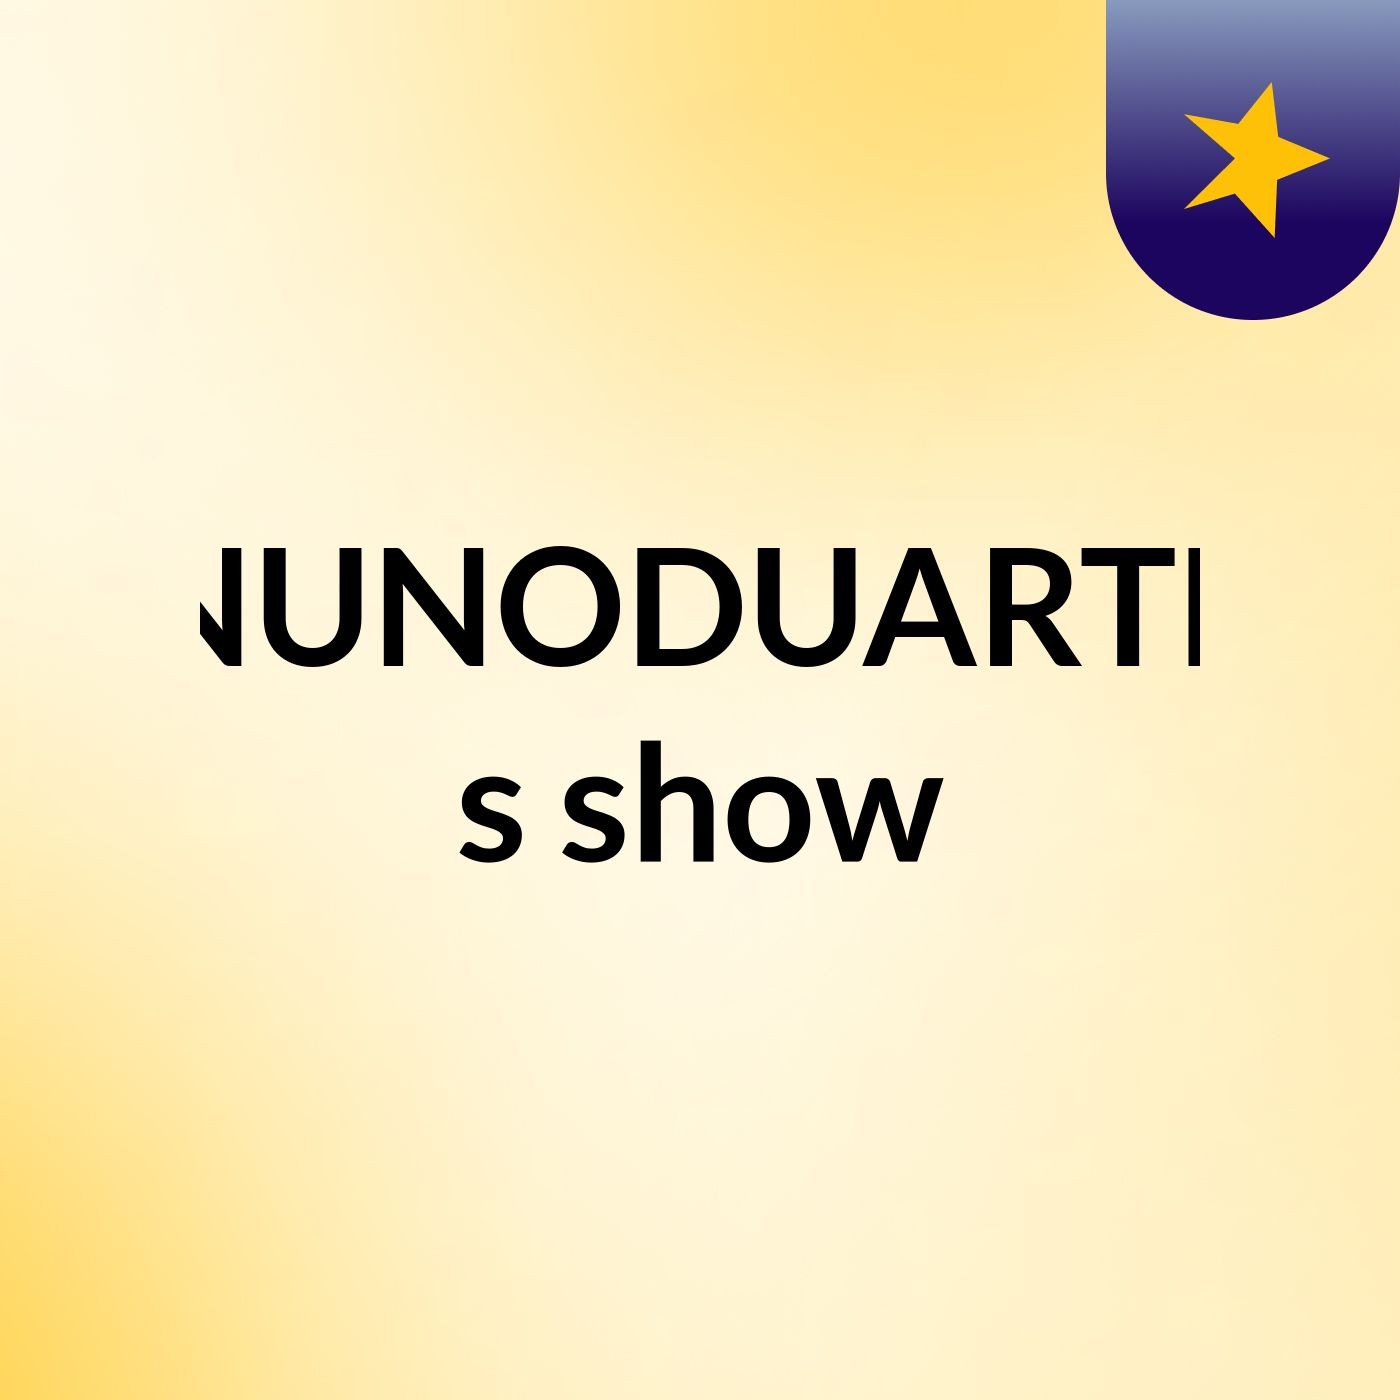 NUNODUARTE's show